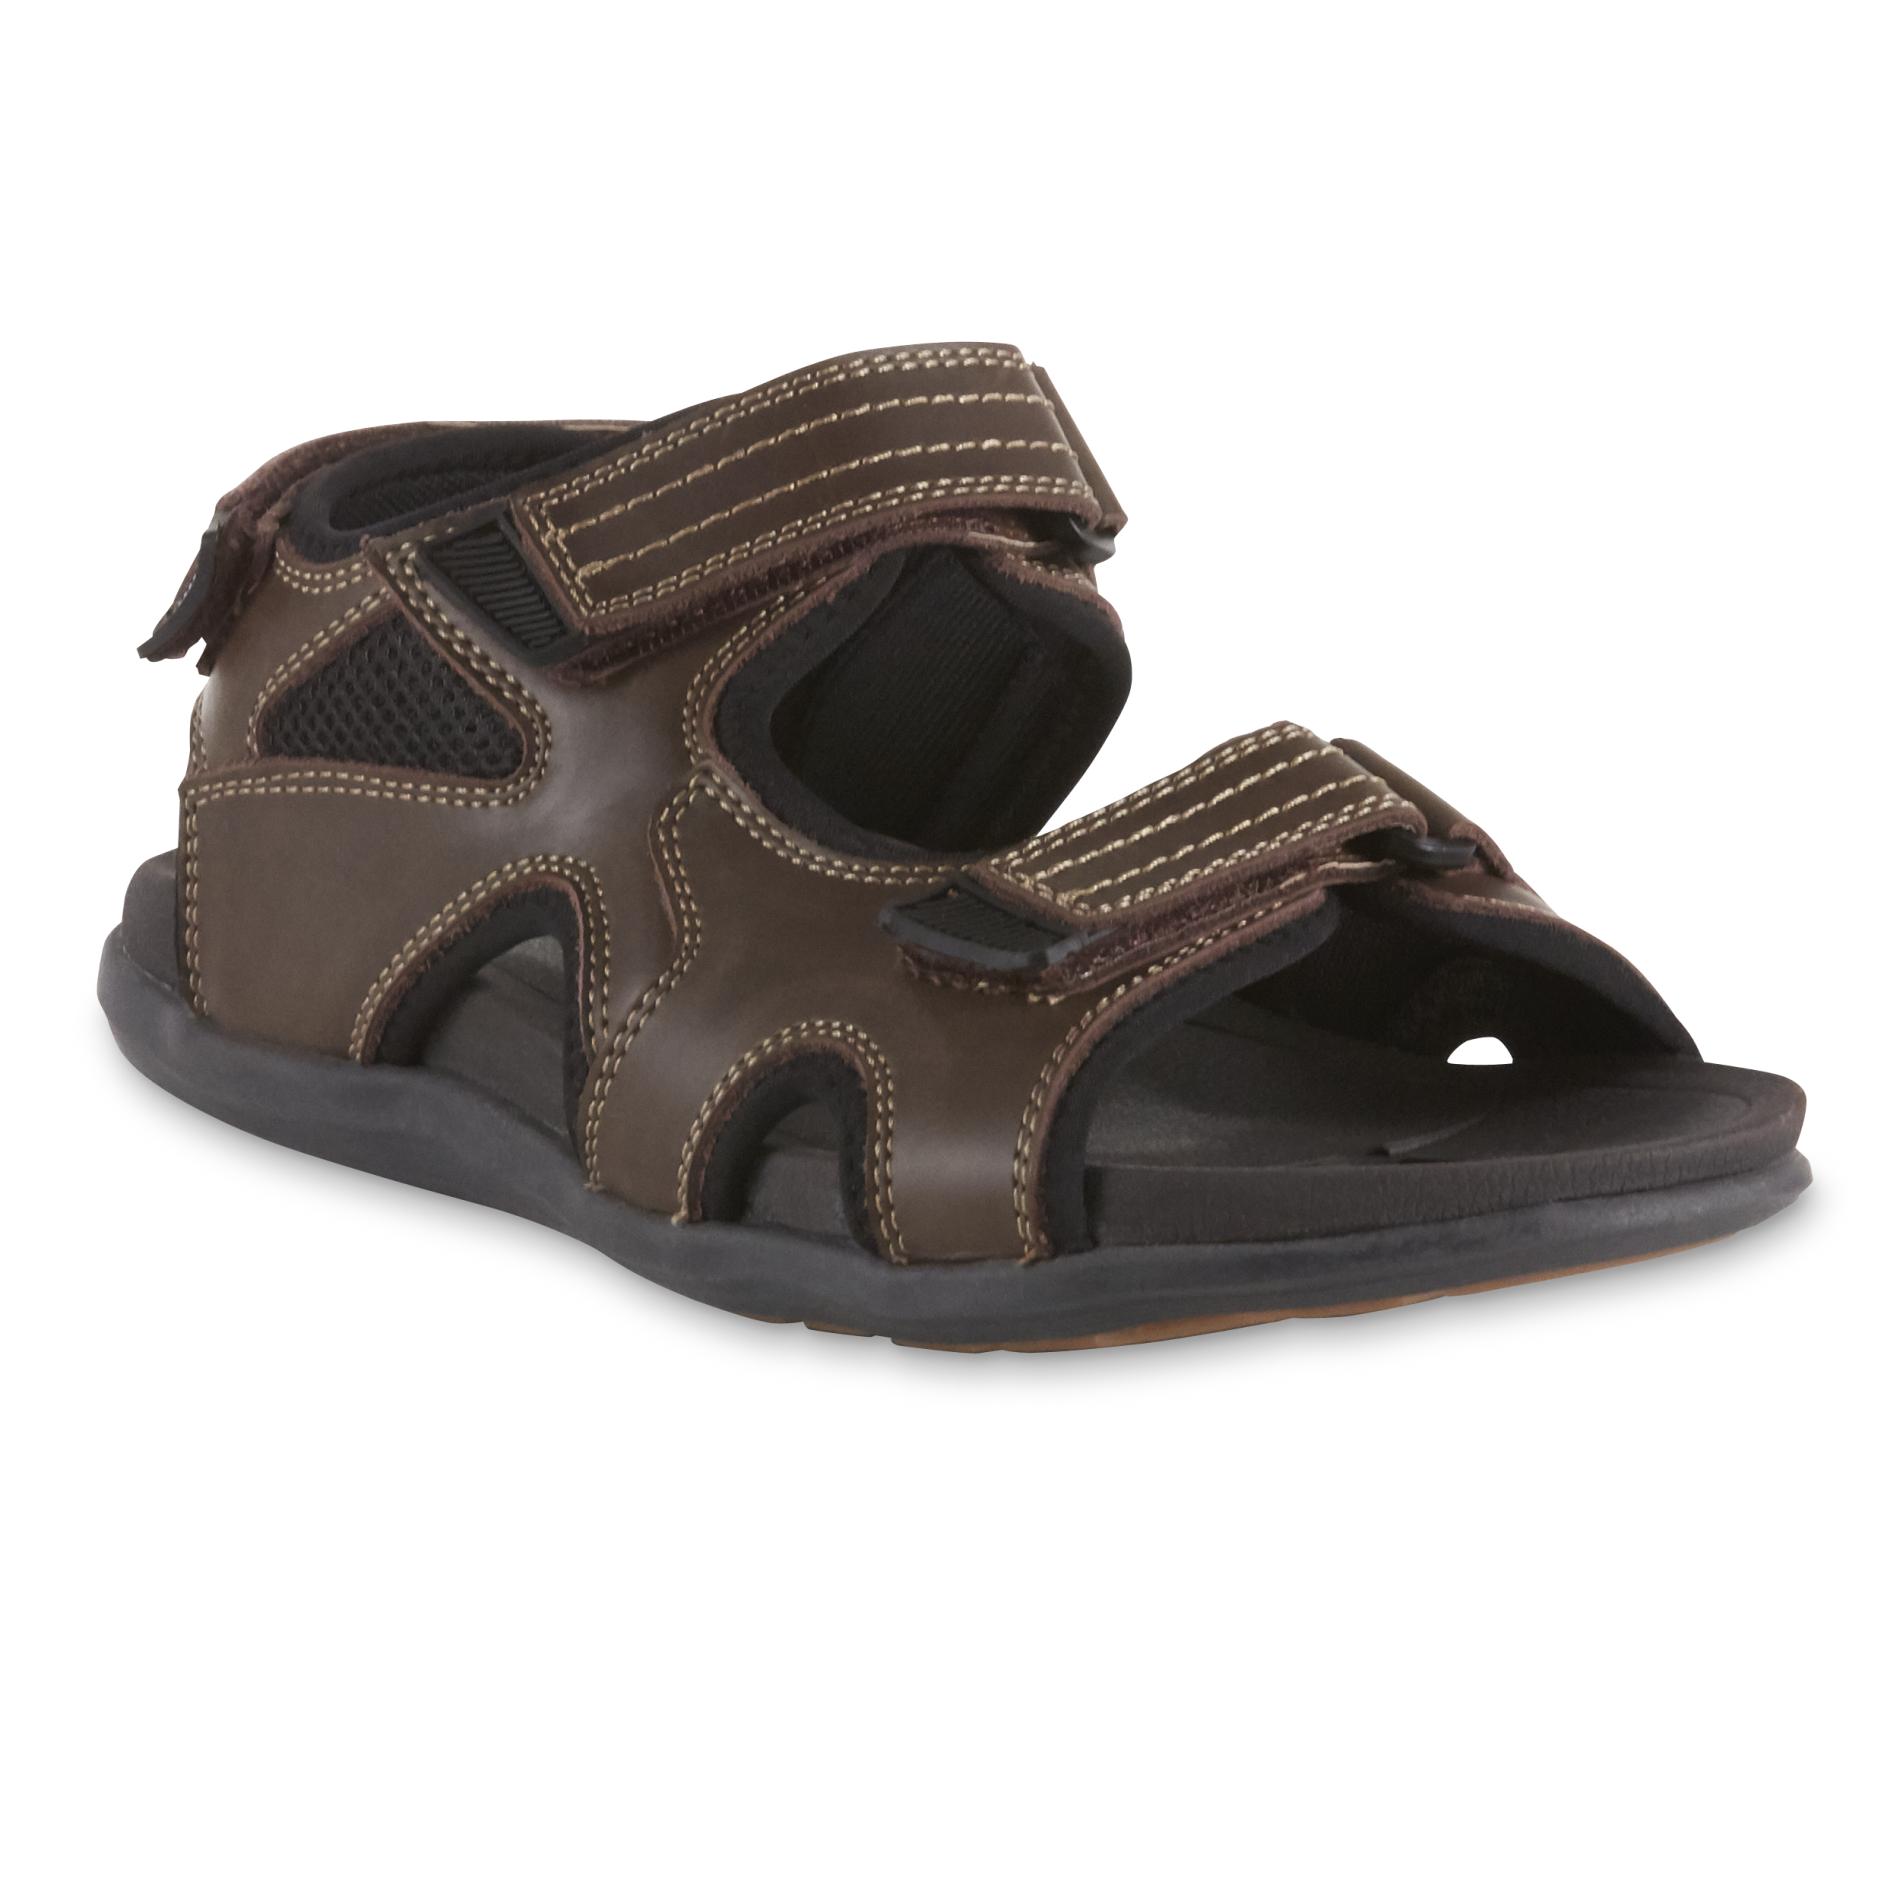 crocs clog sandals